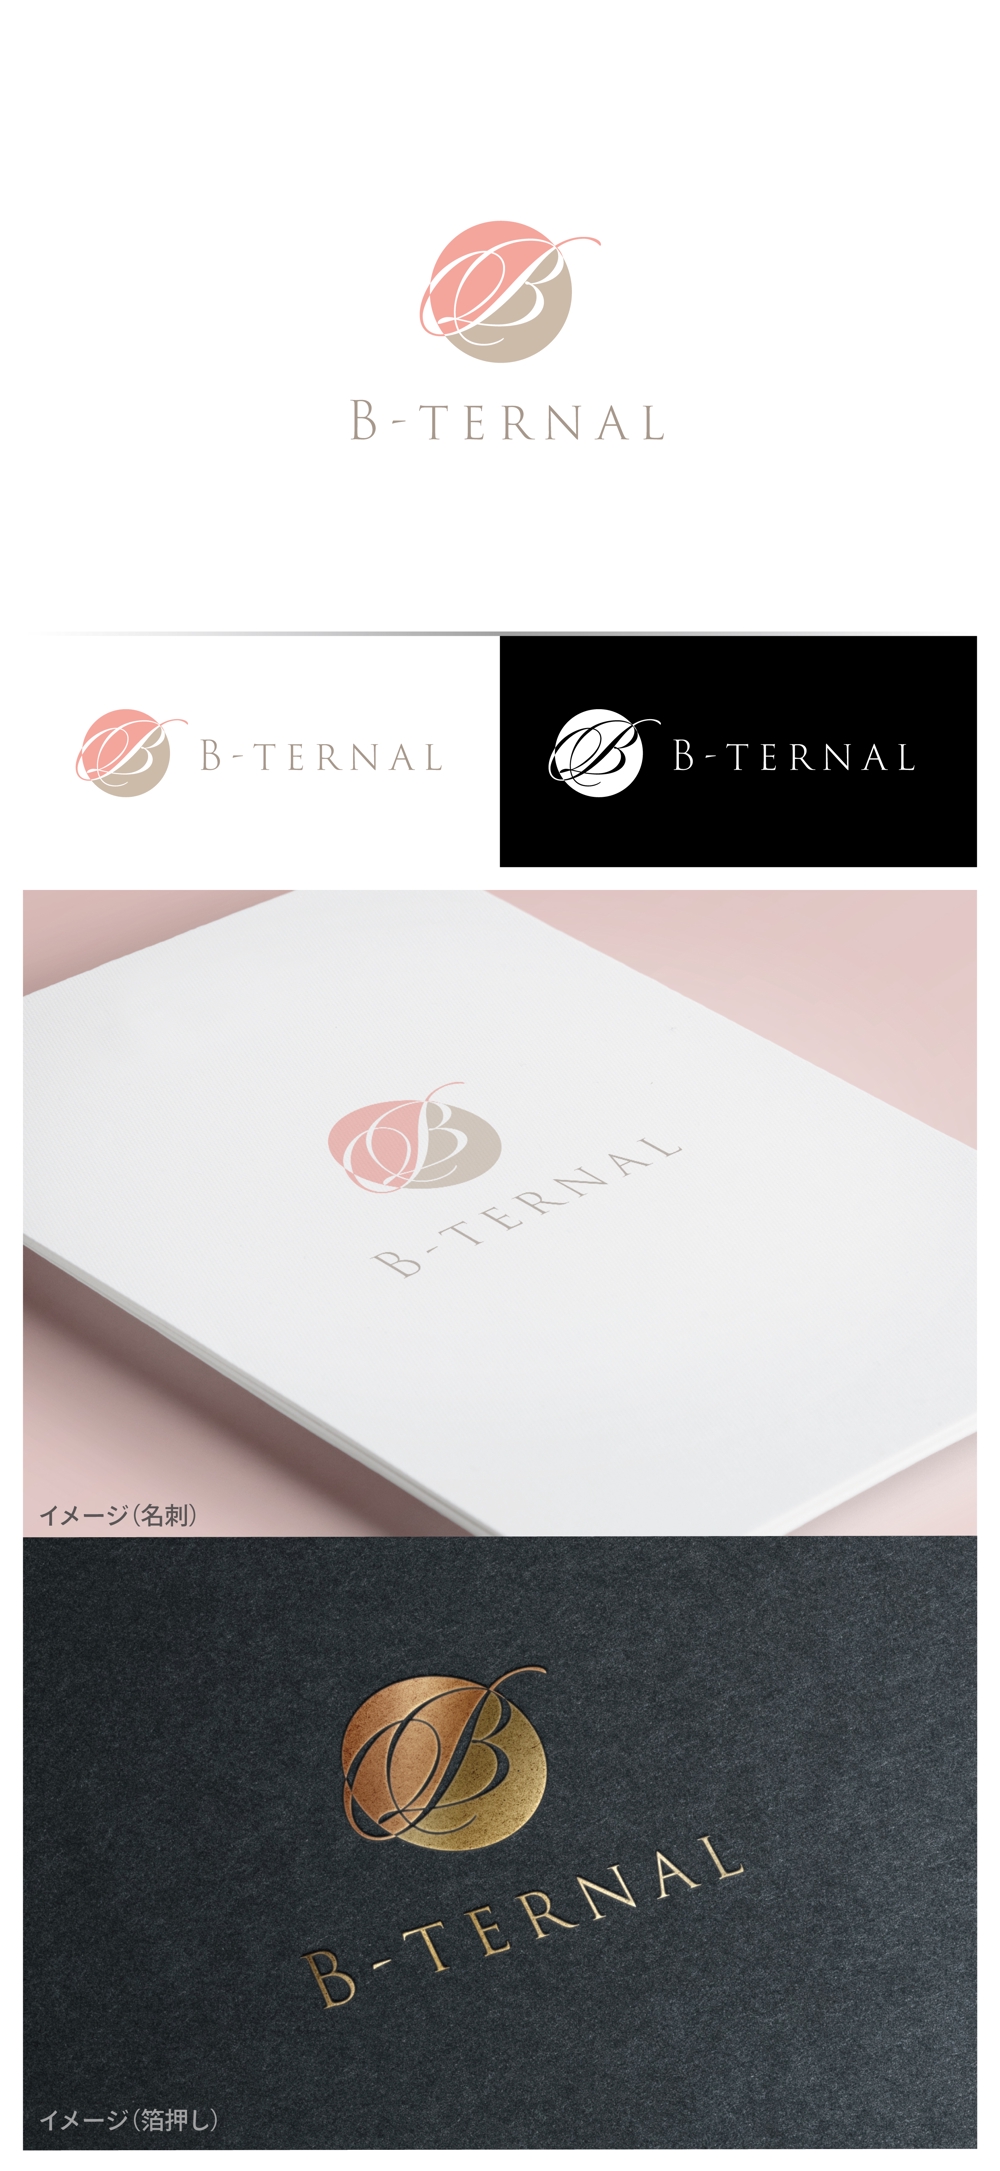 B-ternal_logo02_01.jpg